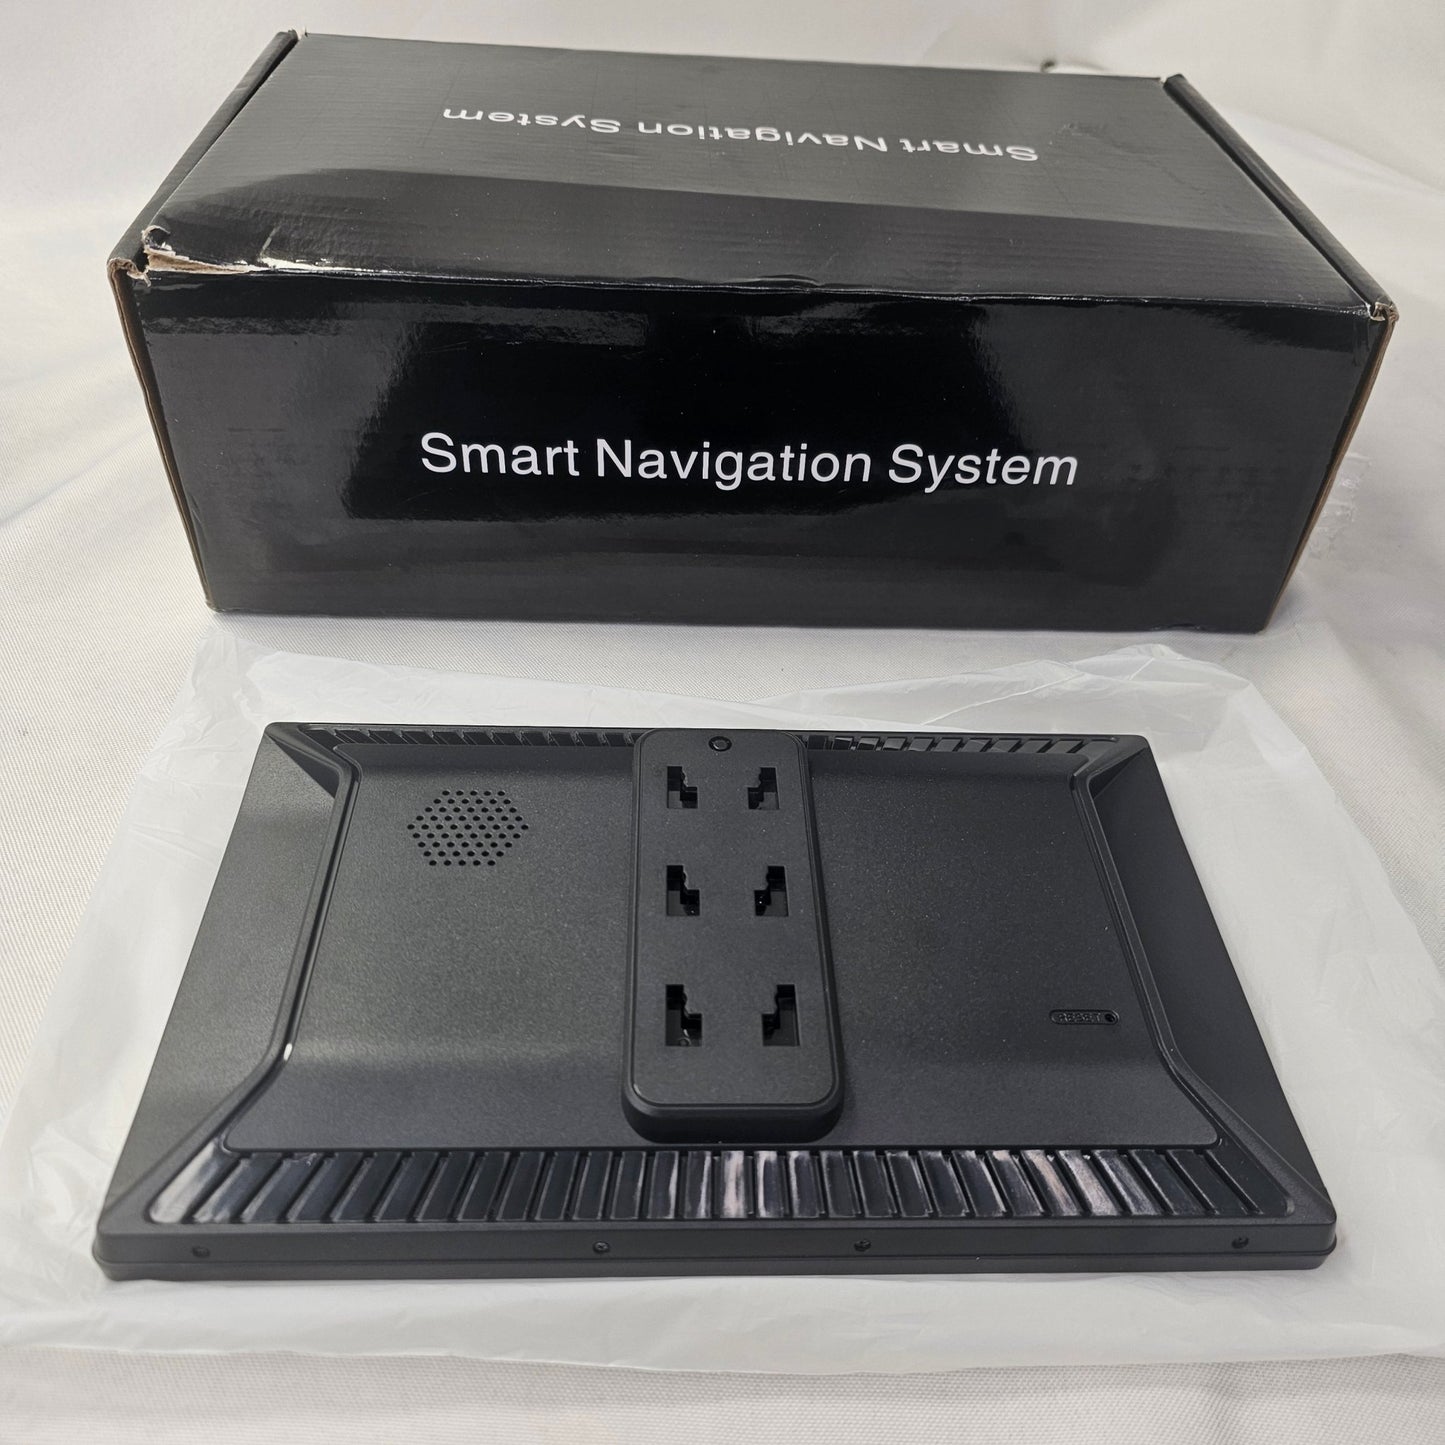 Smart Navigation System - DQ Distribution